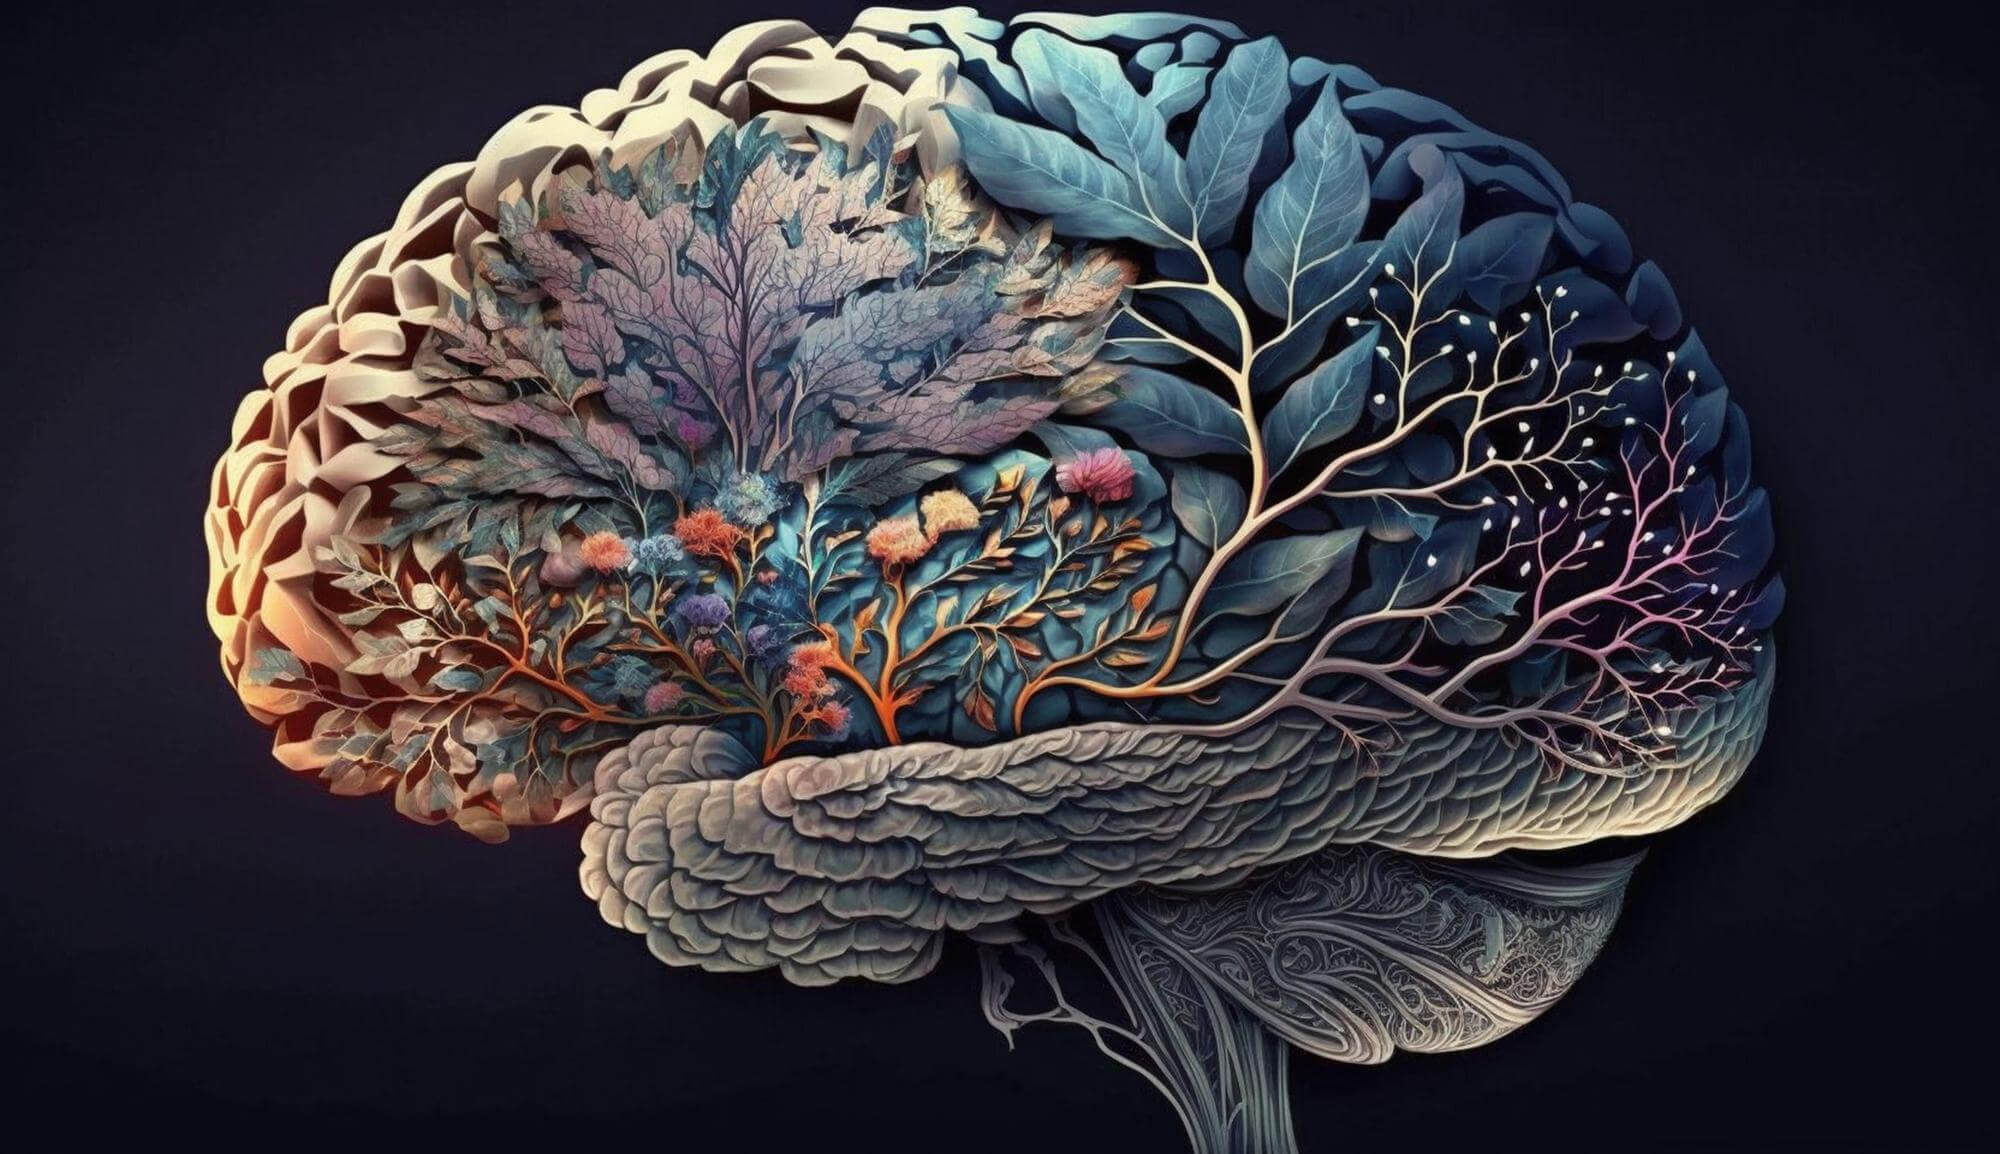 ludzki mozg ciekawostki